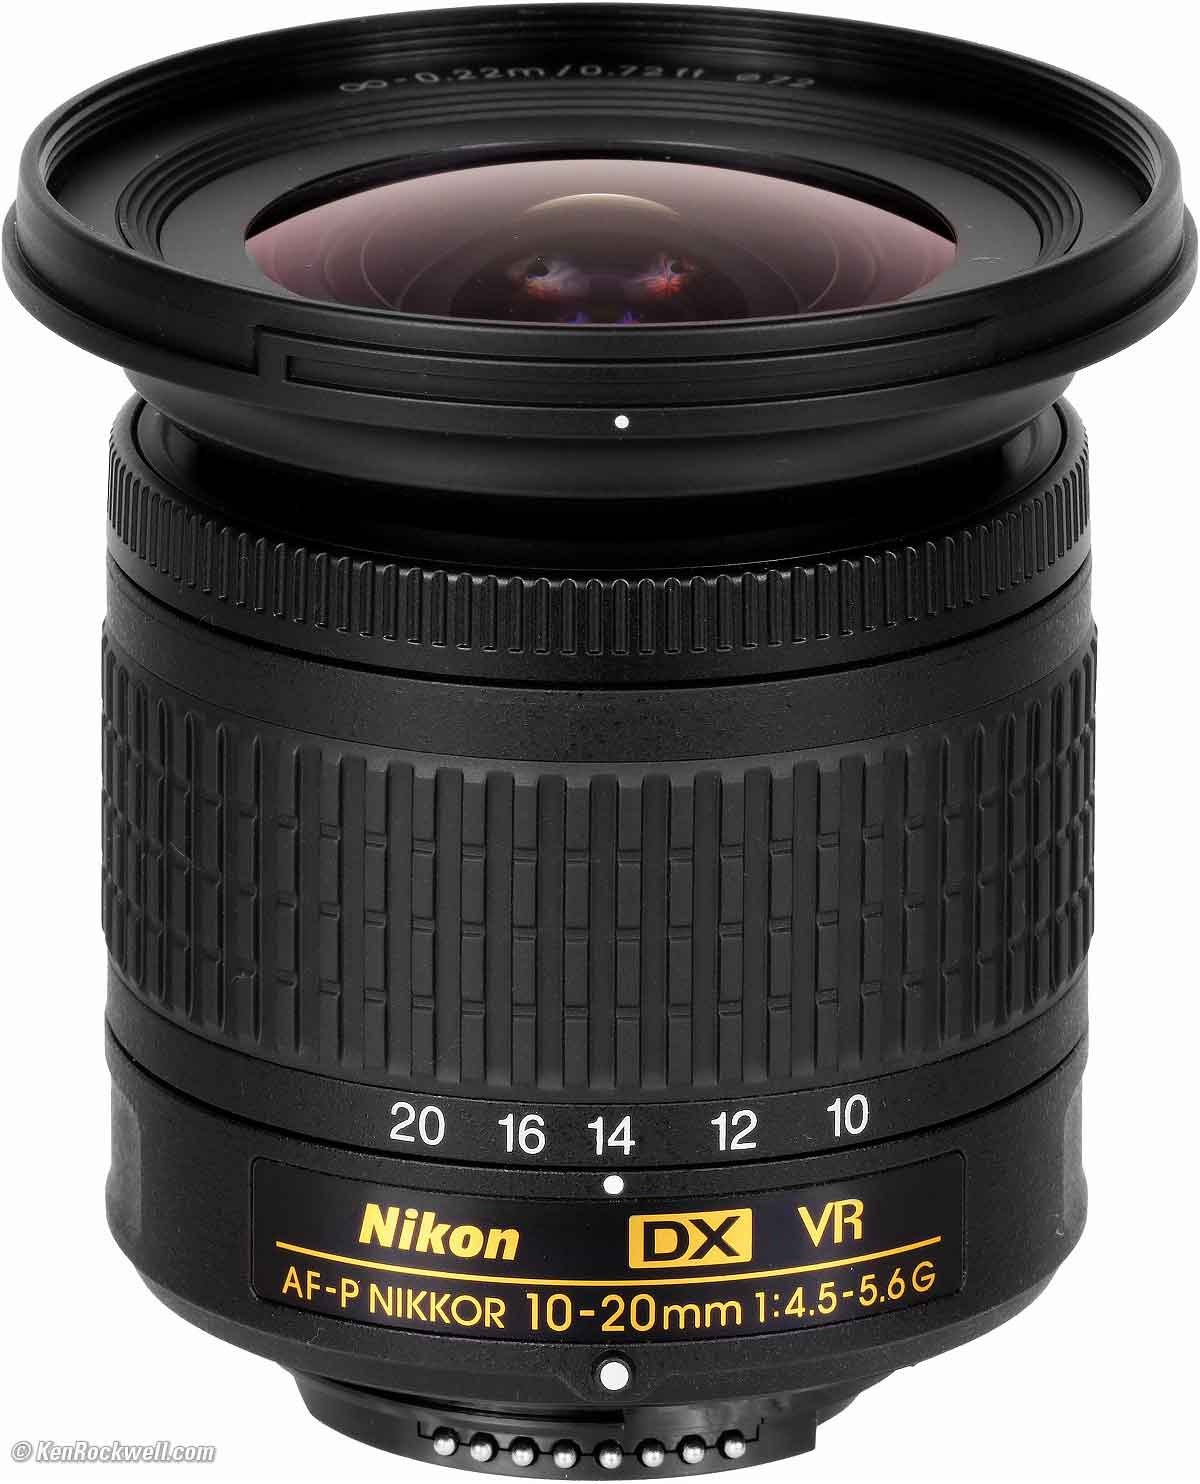 Nikon 10-20mm review